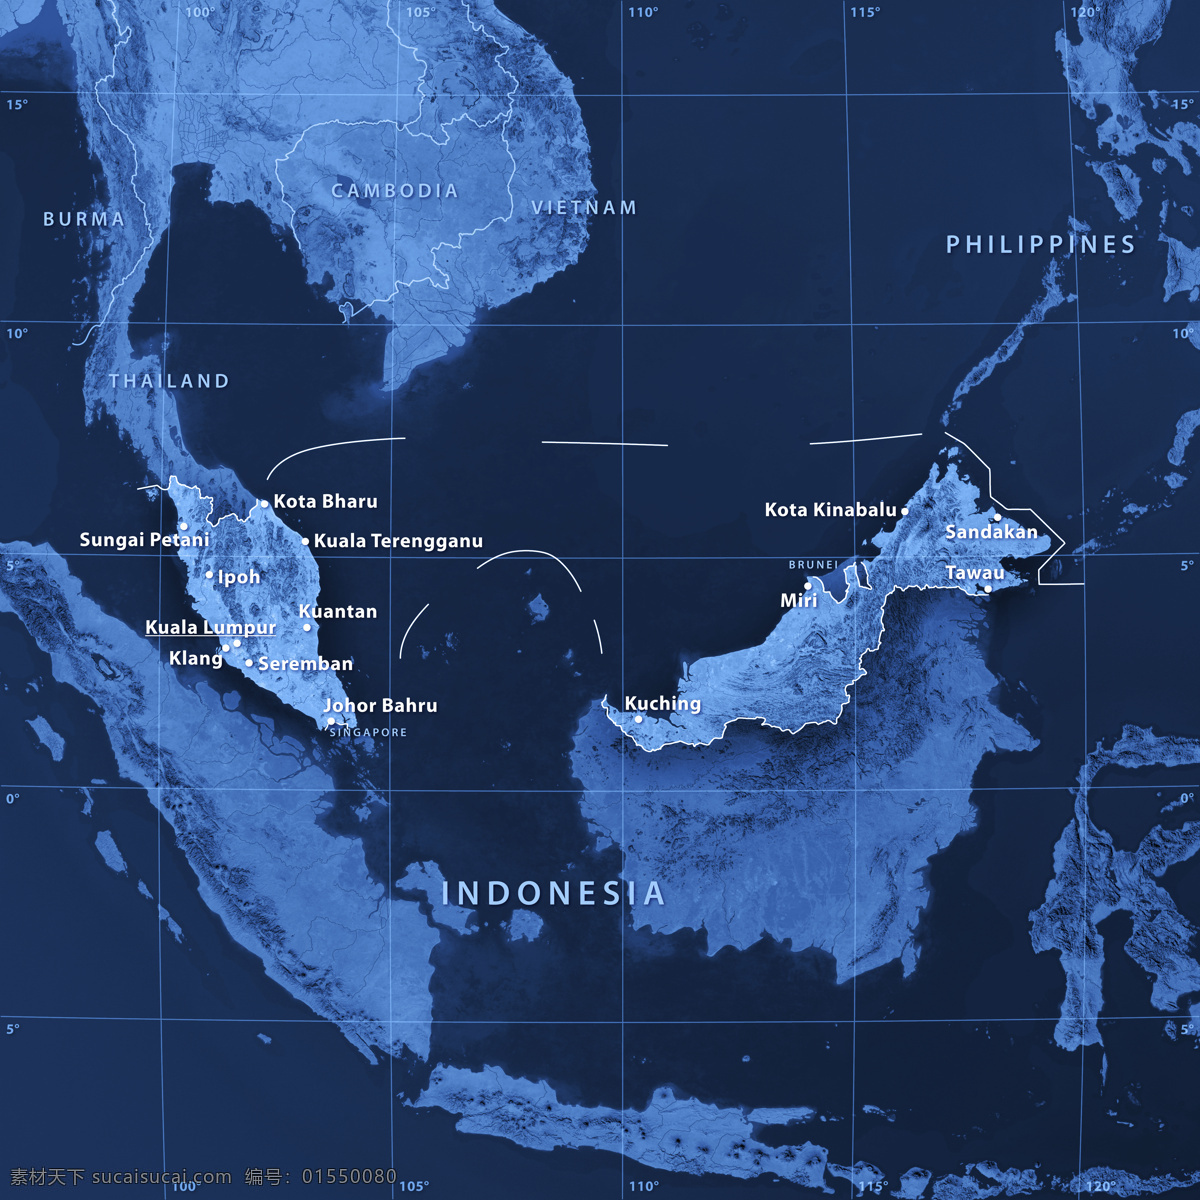 印度尼西亚 地图 东南亚地图 蓝色地图 地图模板 地图图片 生活百科